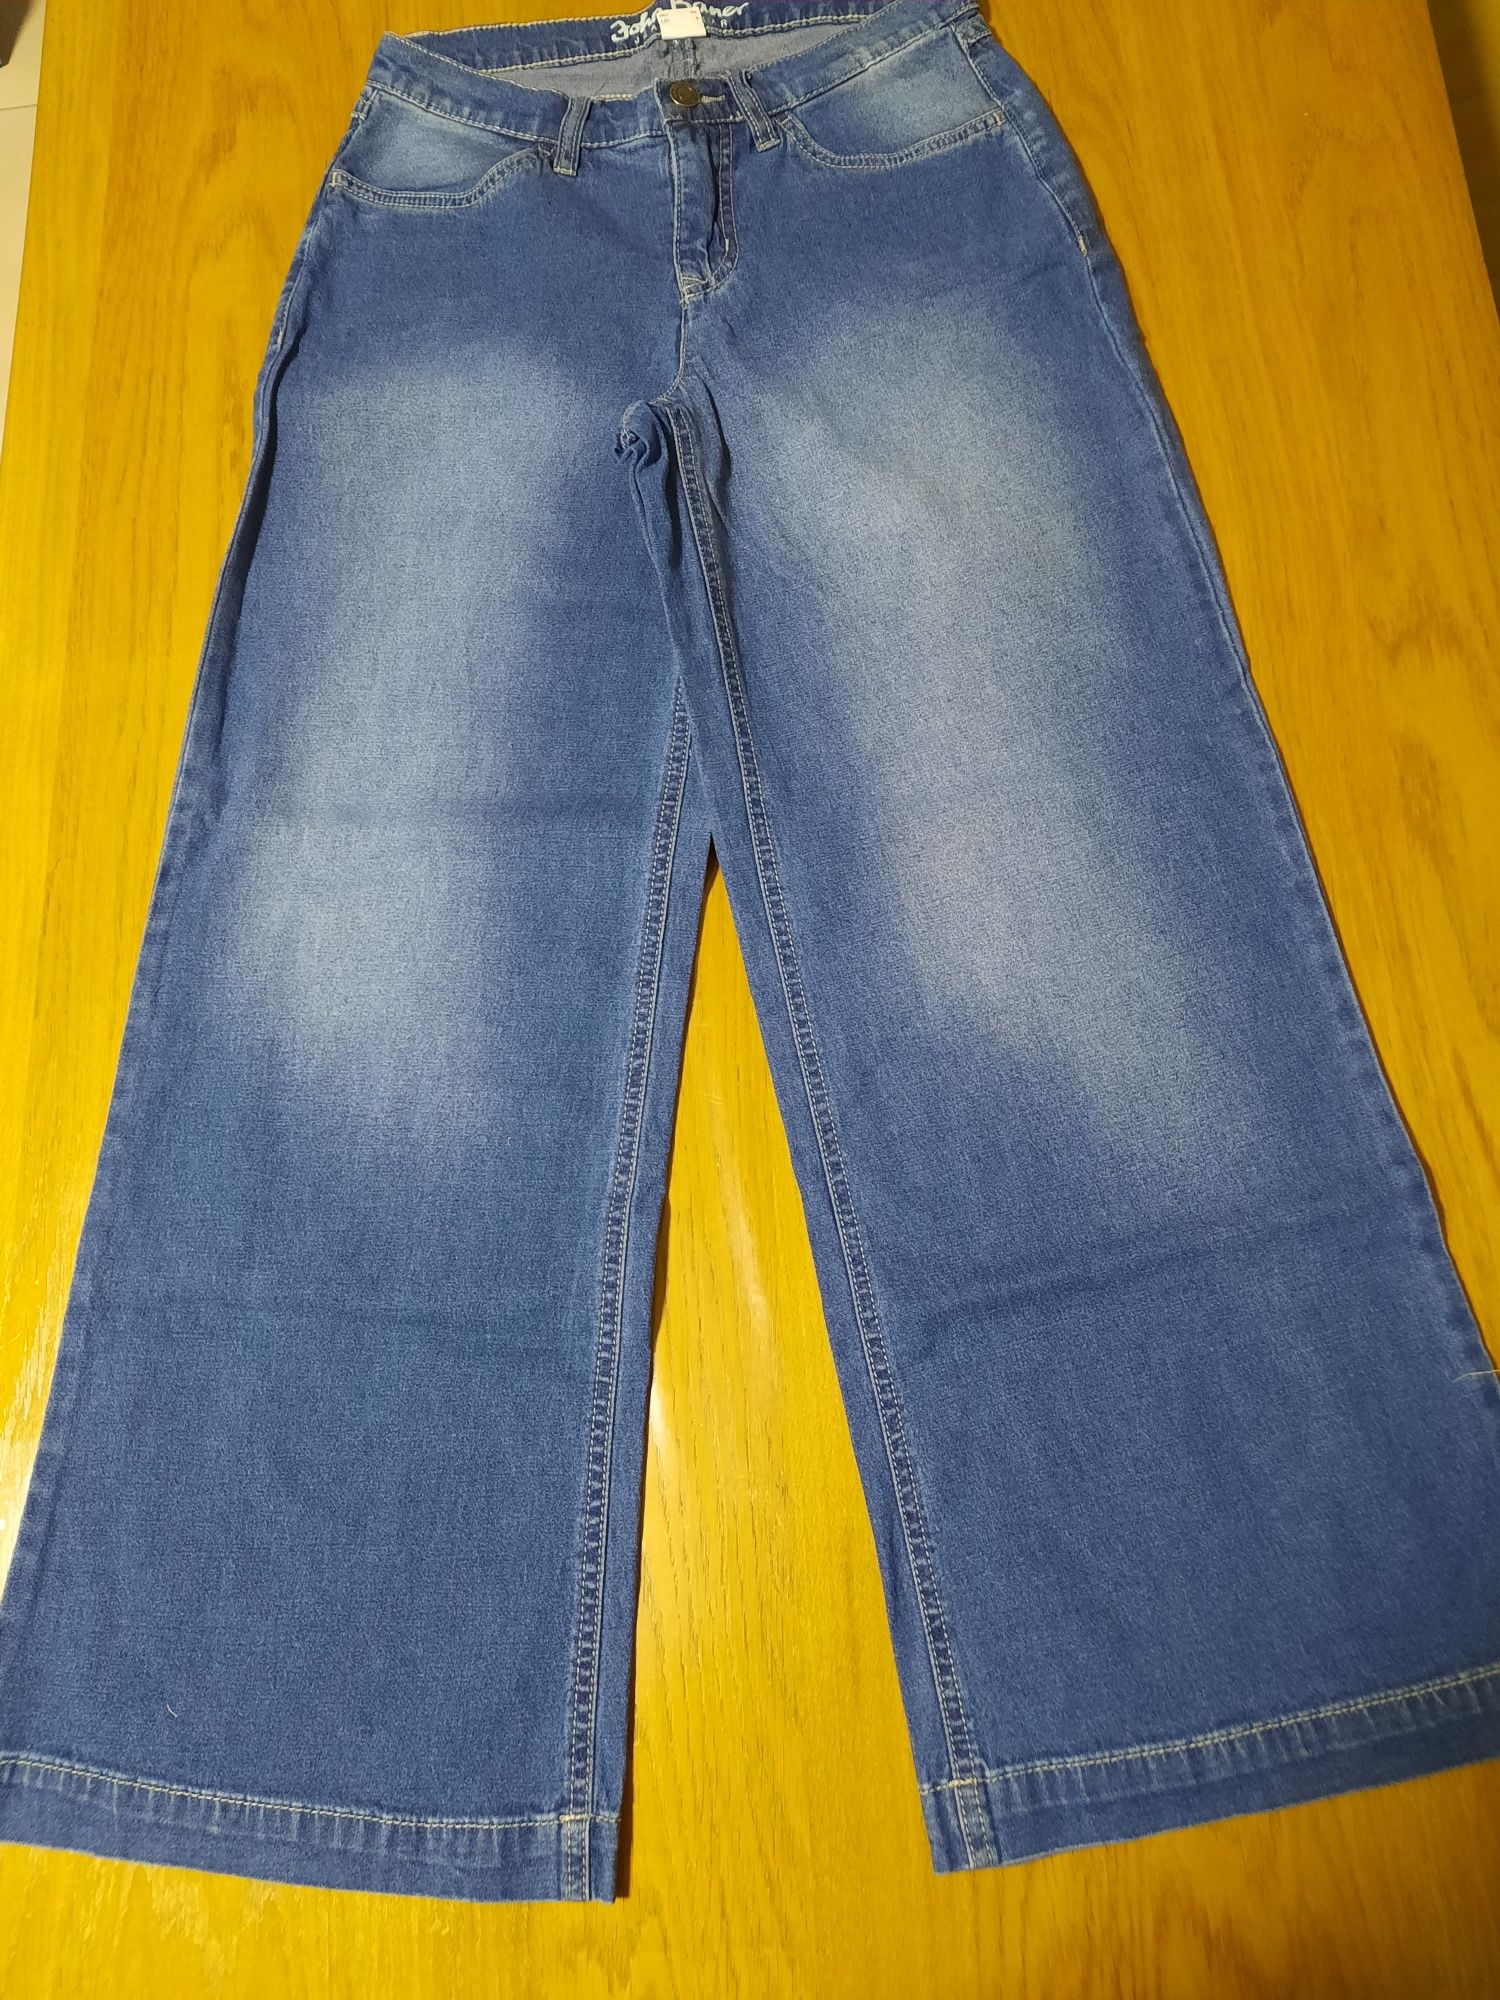 Spodnie z szerokimi nogawkami damskie jeansowe rozmiar 36